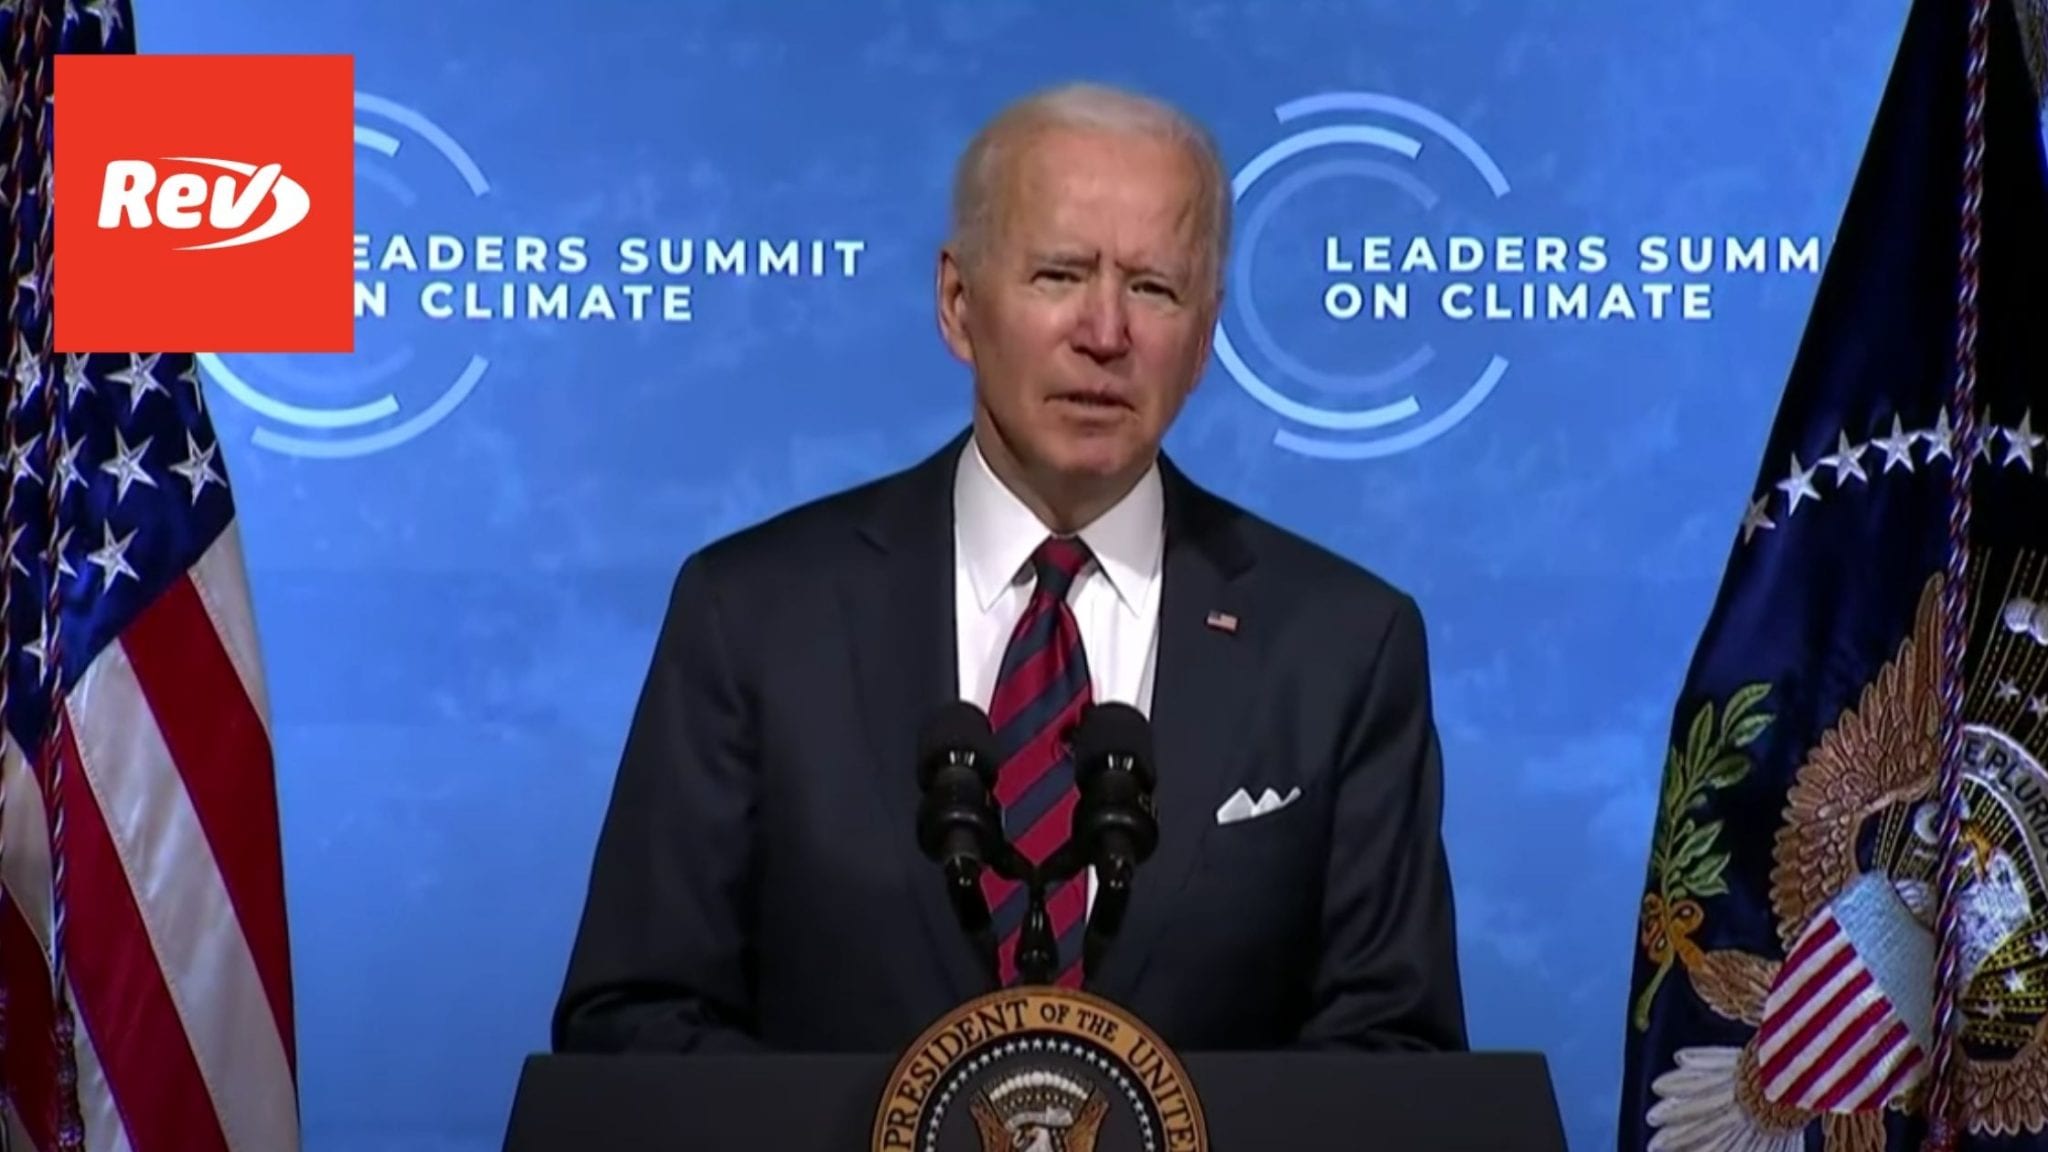 Joe Biden & Kamala Harris Earth Day Speech Transcript: Leaders Summit on Climate Session 1